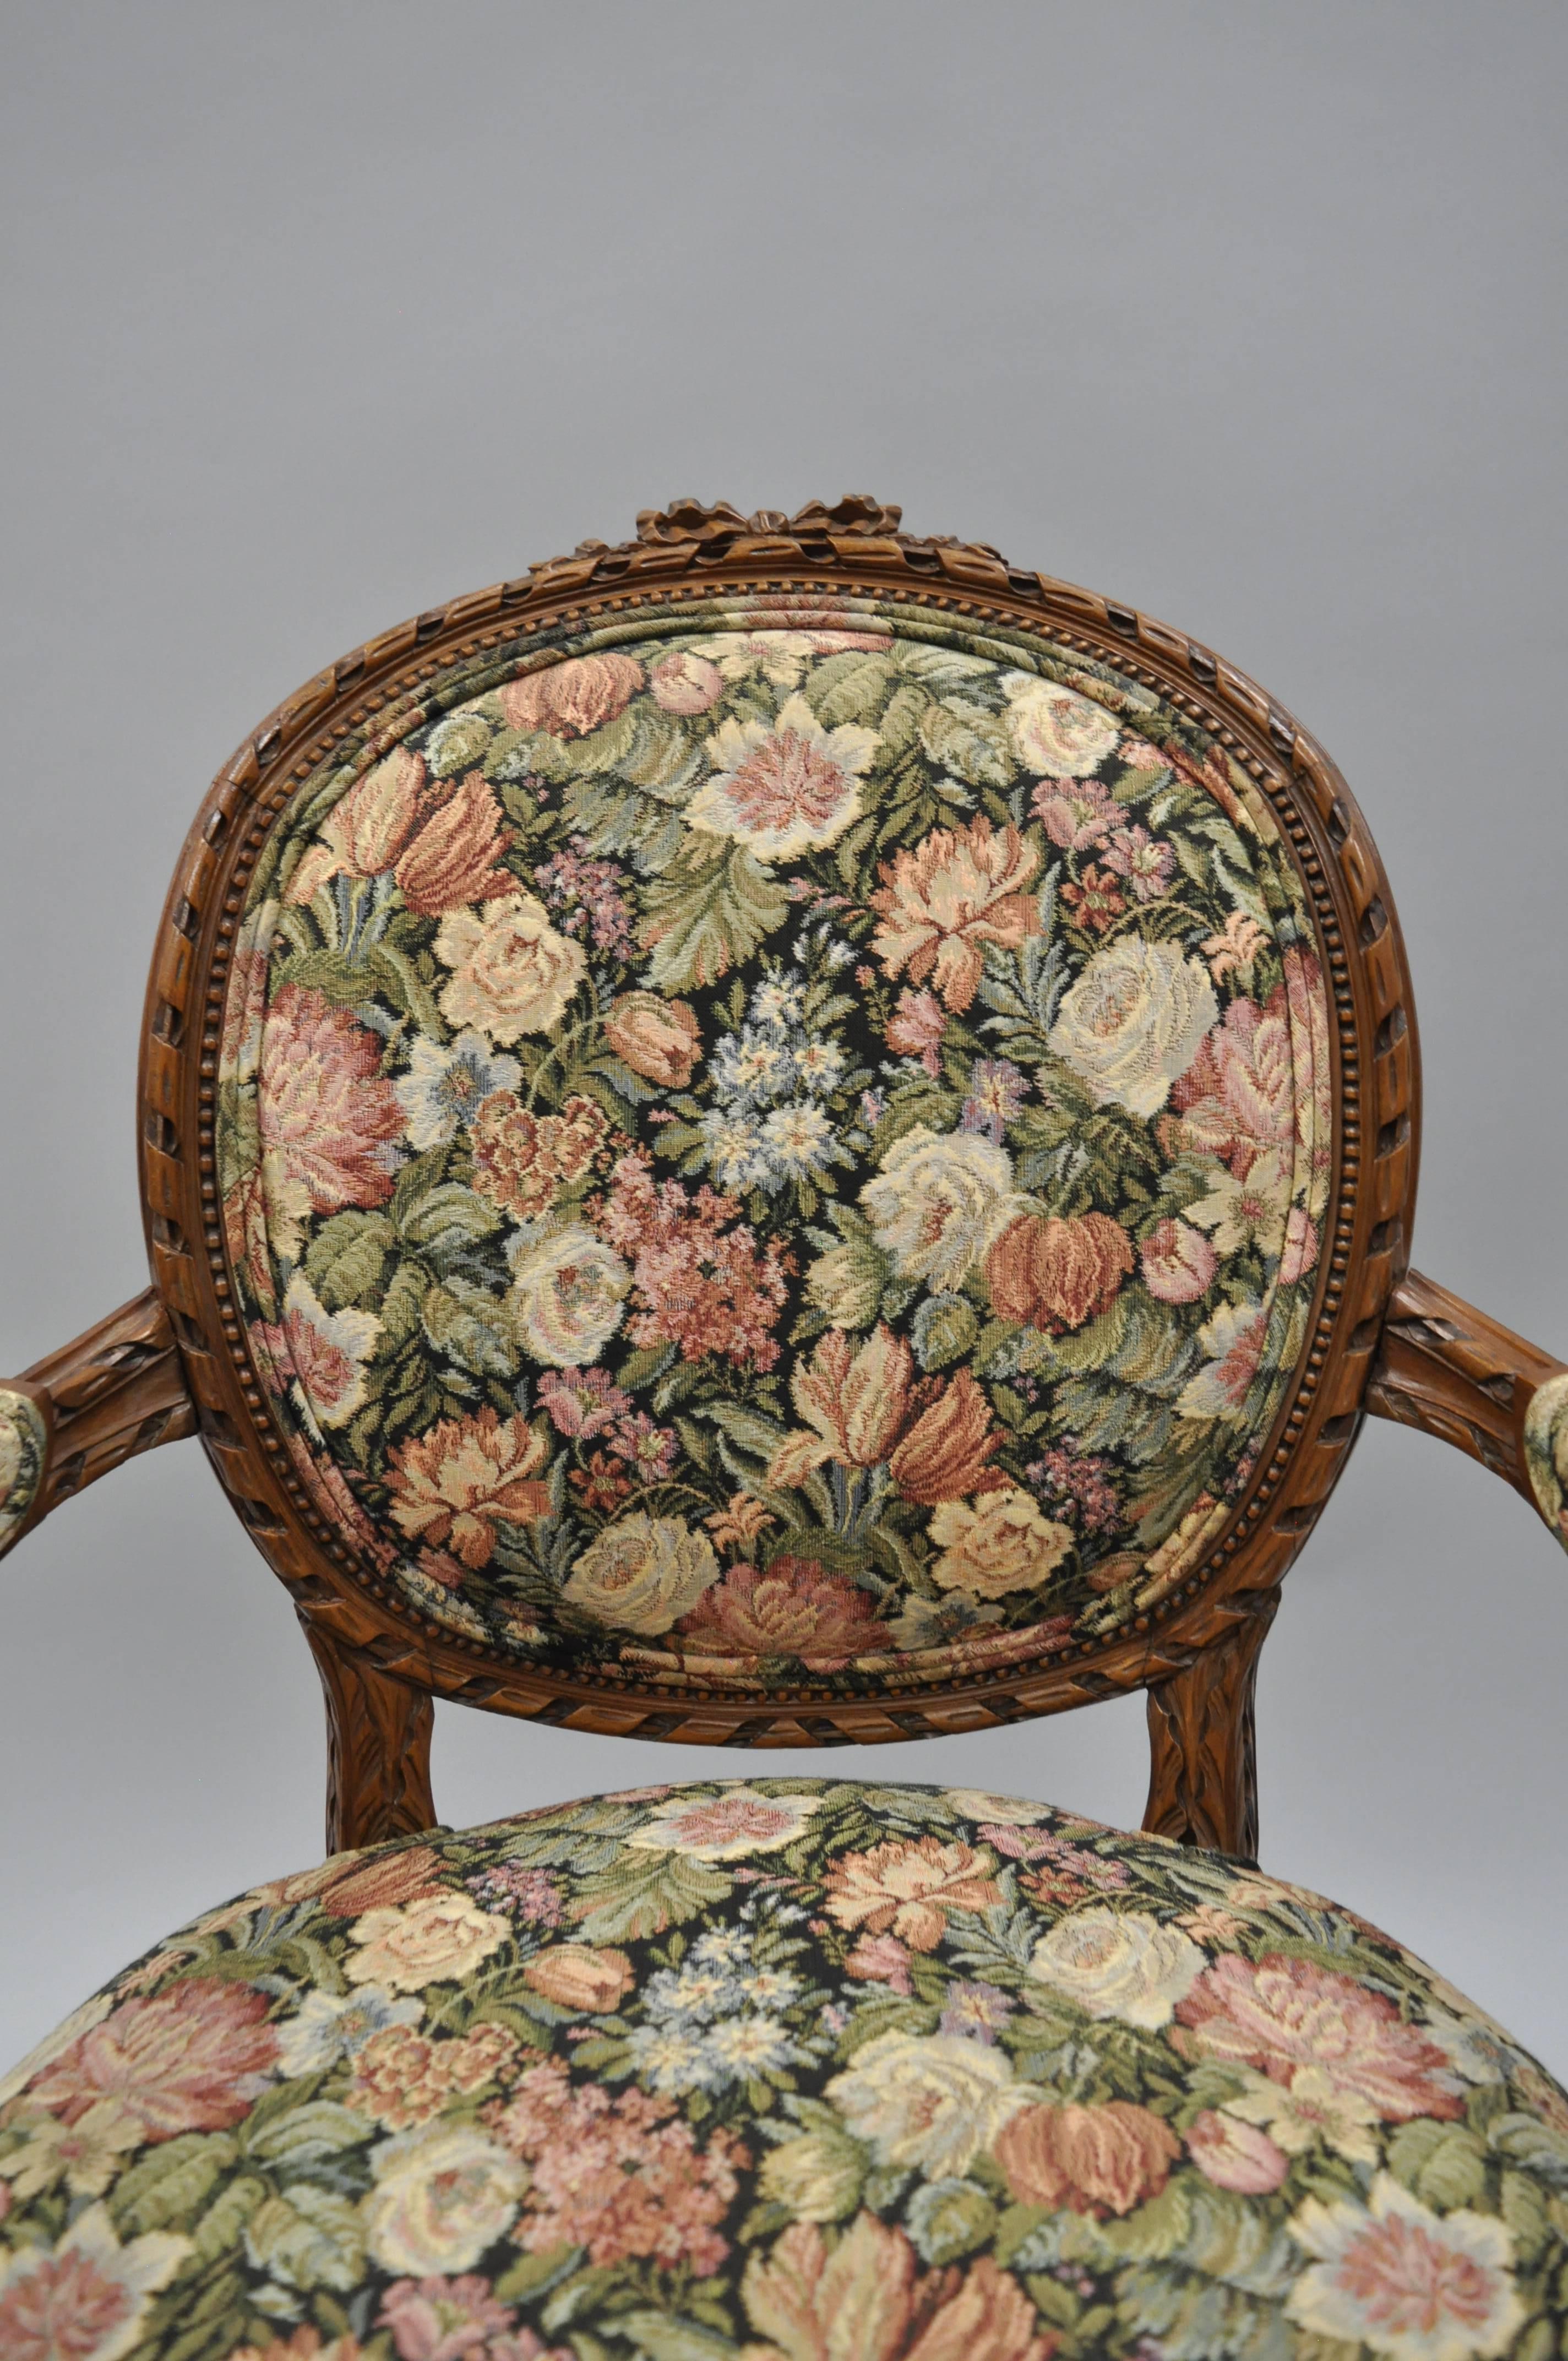 Paar Französisch Land / Louis XV Stil des frühen 20. Jahrhunderts fein geschnitzten Nussbaum Sessel mit runden Rückenlehnen. Die Stühle zeichnen sich durch kunstvoll geschnitzte Massivholzrahmen, Cabriole-Beine, geschnitzte Bandkämme, geschnitzte